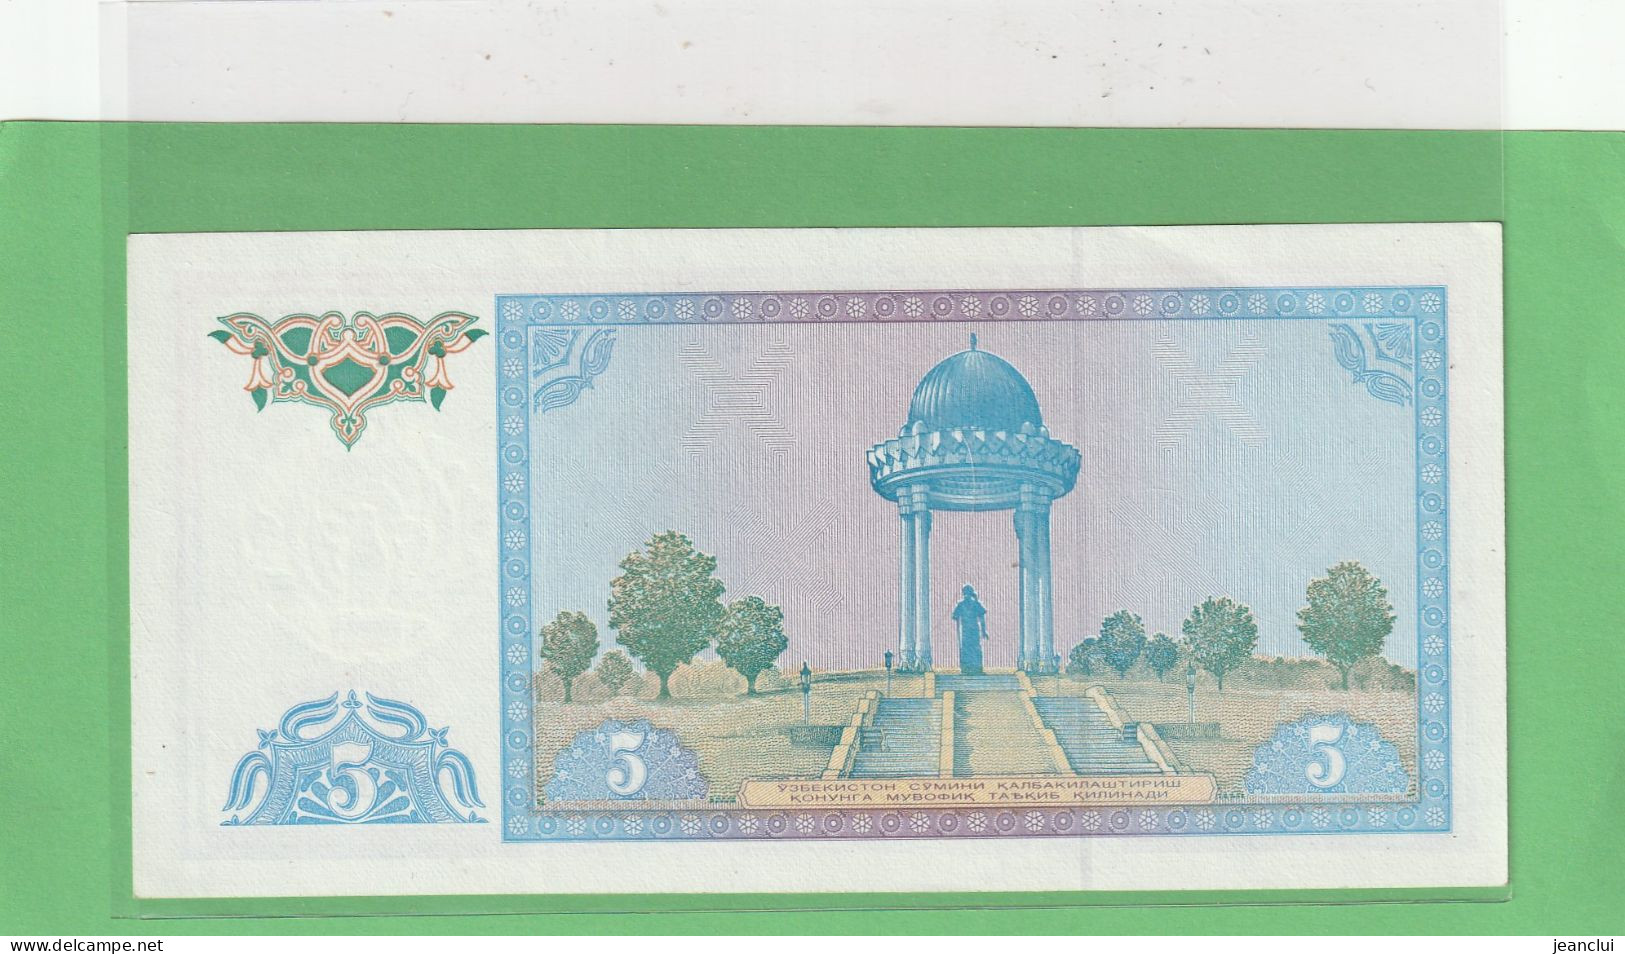 OUZBEKISTAN  .  5 CYM  .  1994   . N° LV 3917310  .  2 SCANNES  .  BILLET ETAT LUXE - Uzbekistan